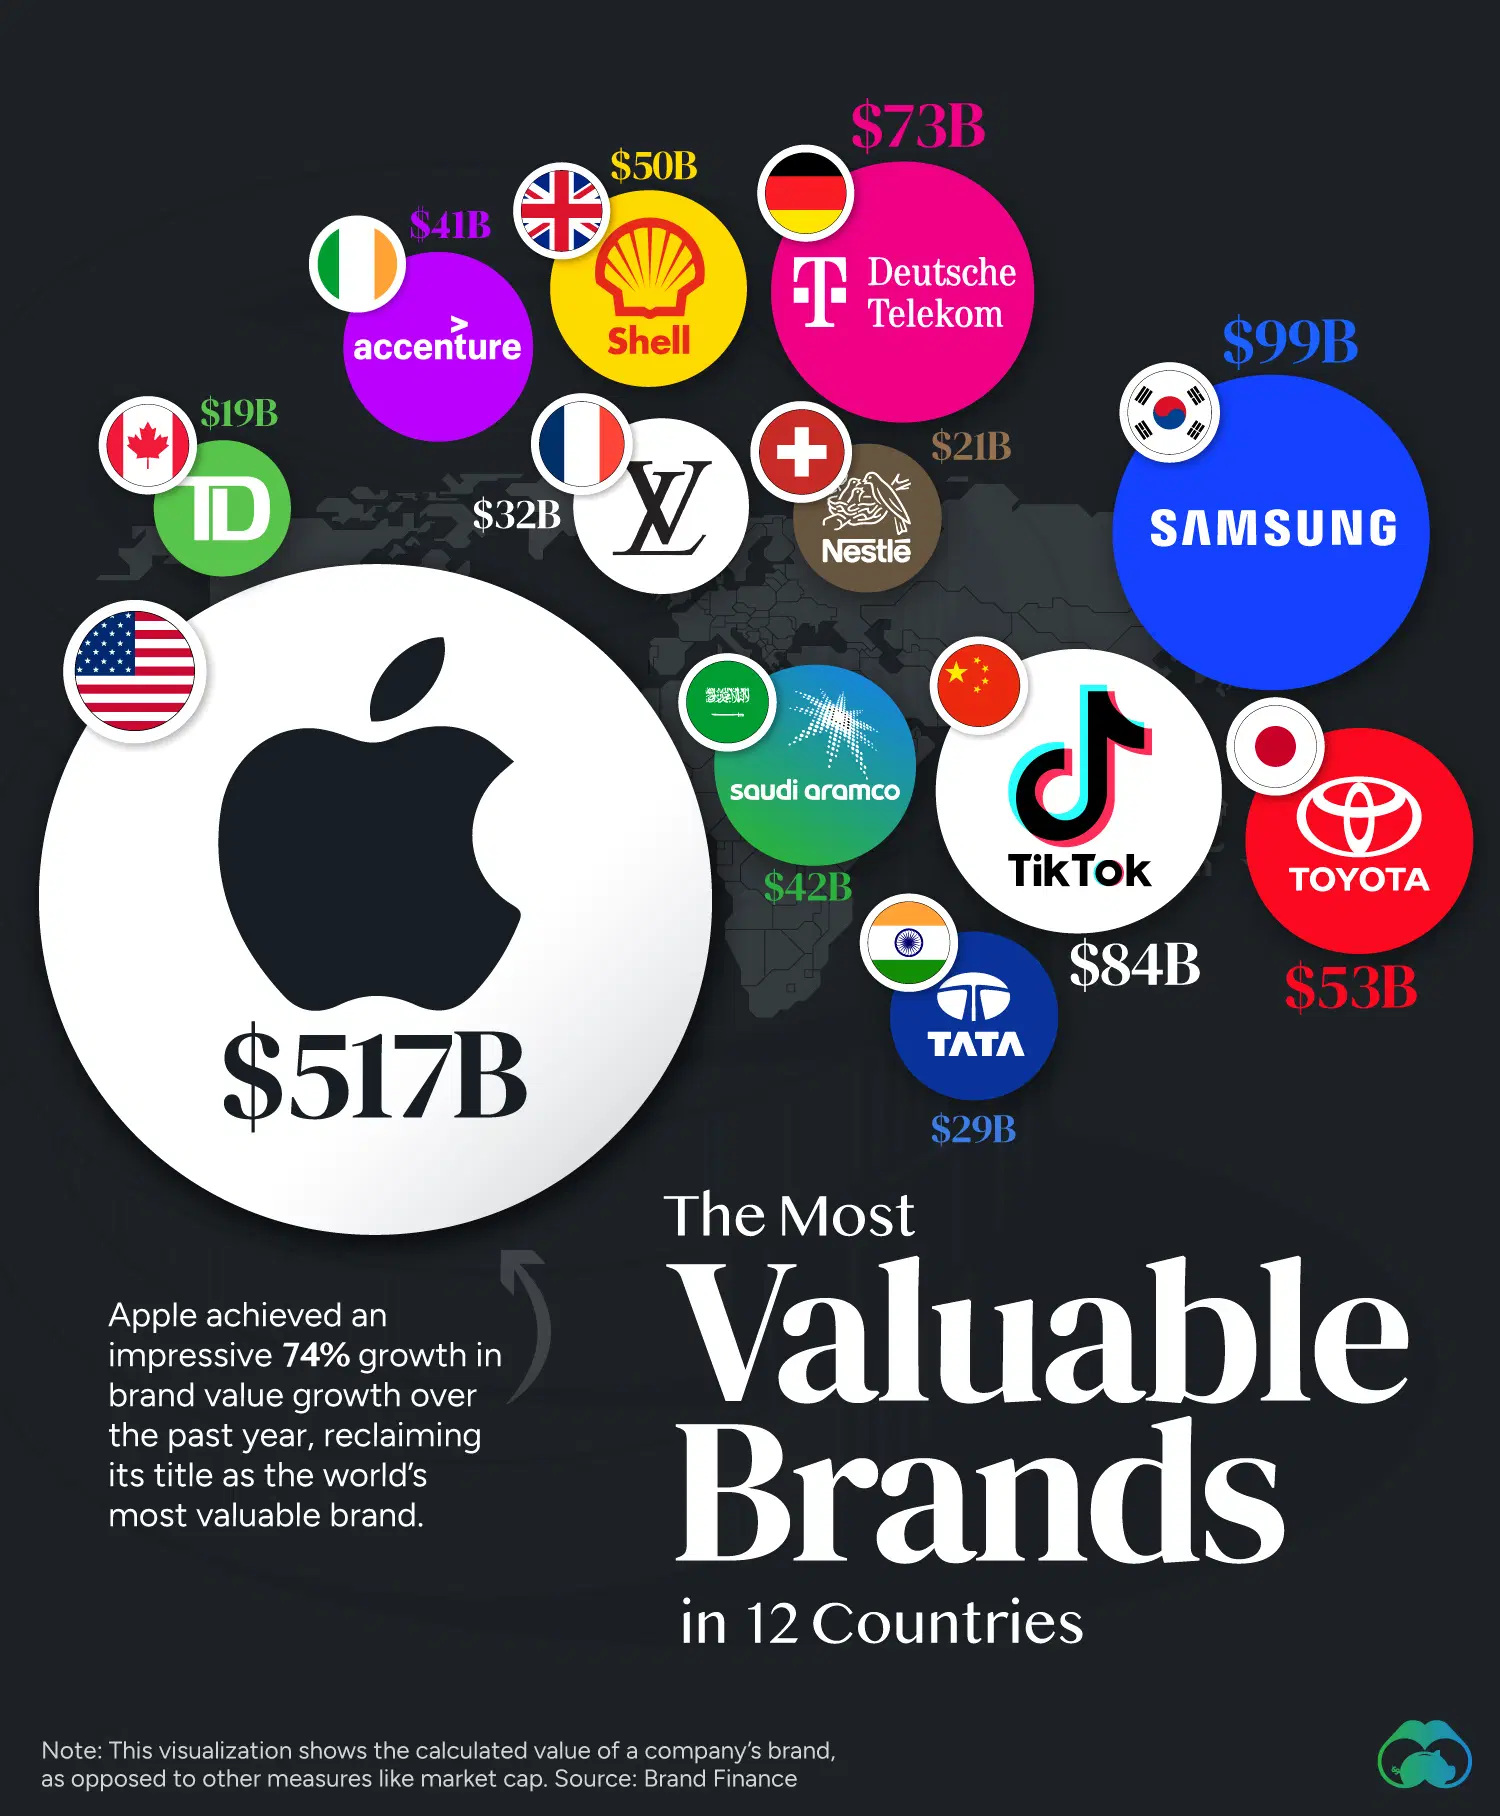 Las marcas más valiosas en 12 países